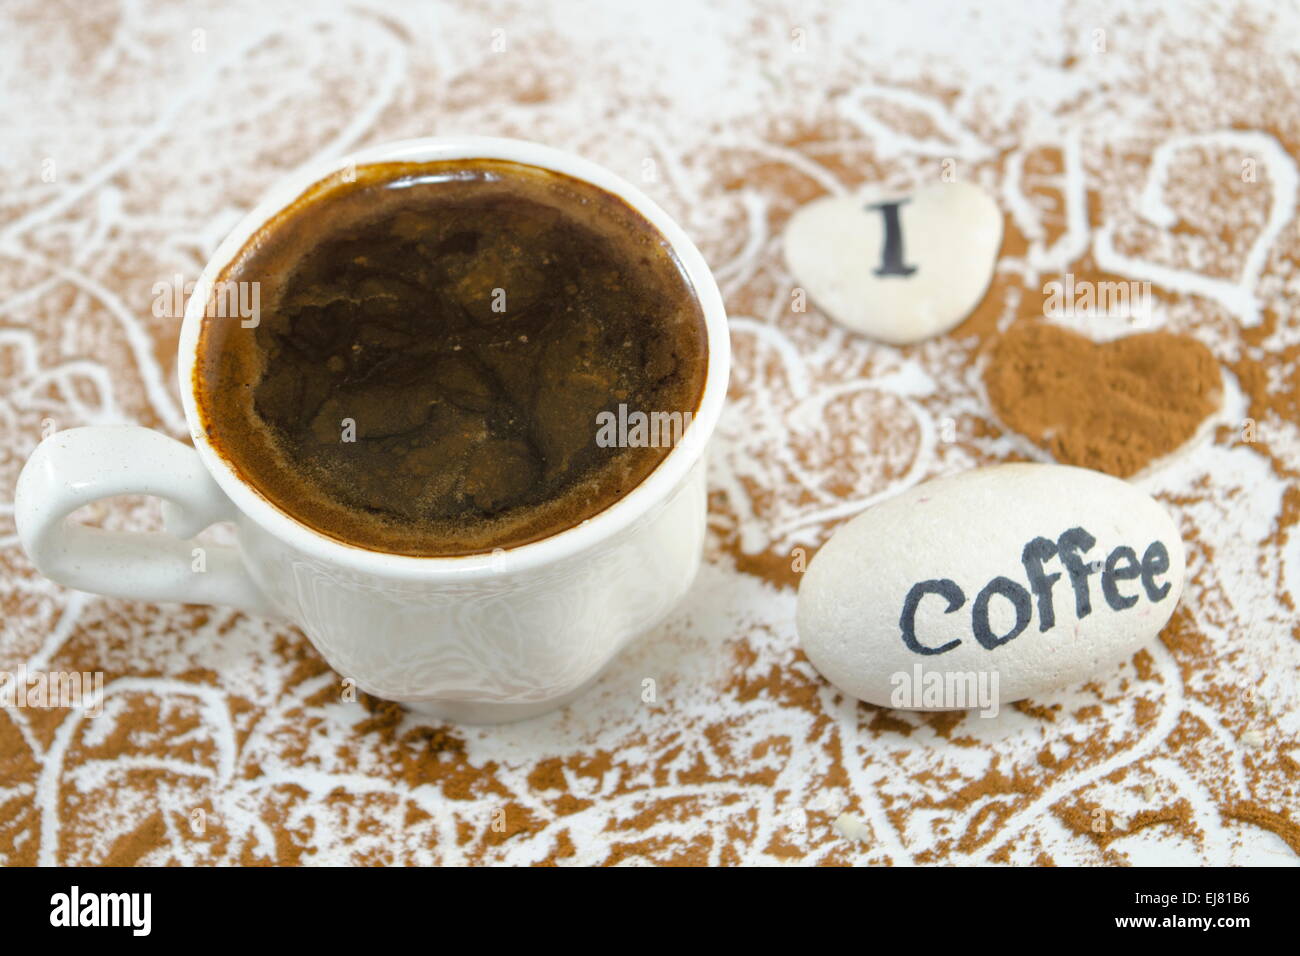 Weiße Tasse Kaffee und Felsen sagen: "Ich liebe Kaffee" Stockfoto